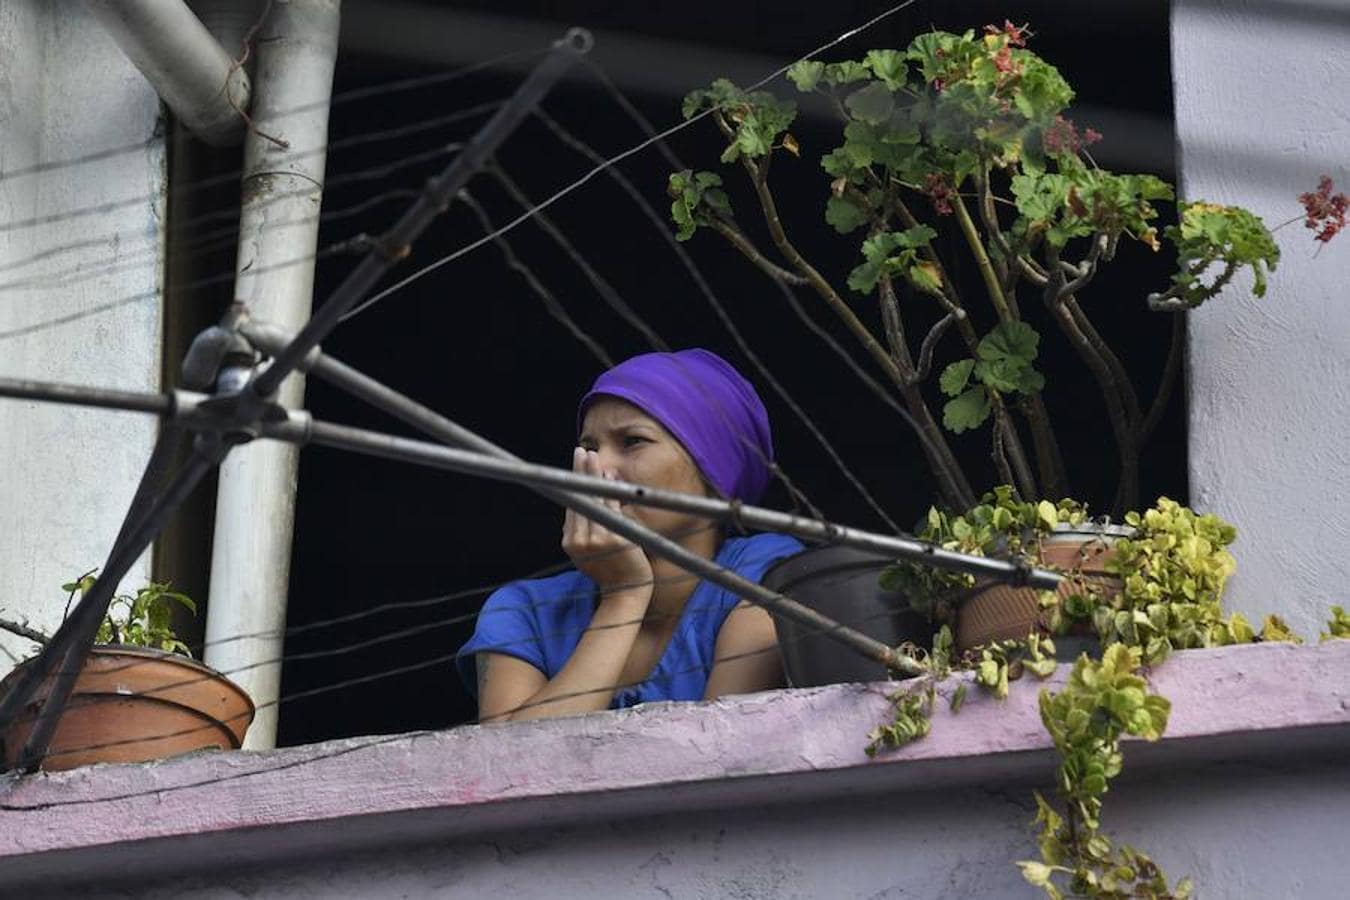 Las imágenes más dramáticas de la sublevación militar en Venezuela. Una vecina observa las revueltas desde su ventana